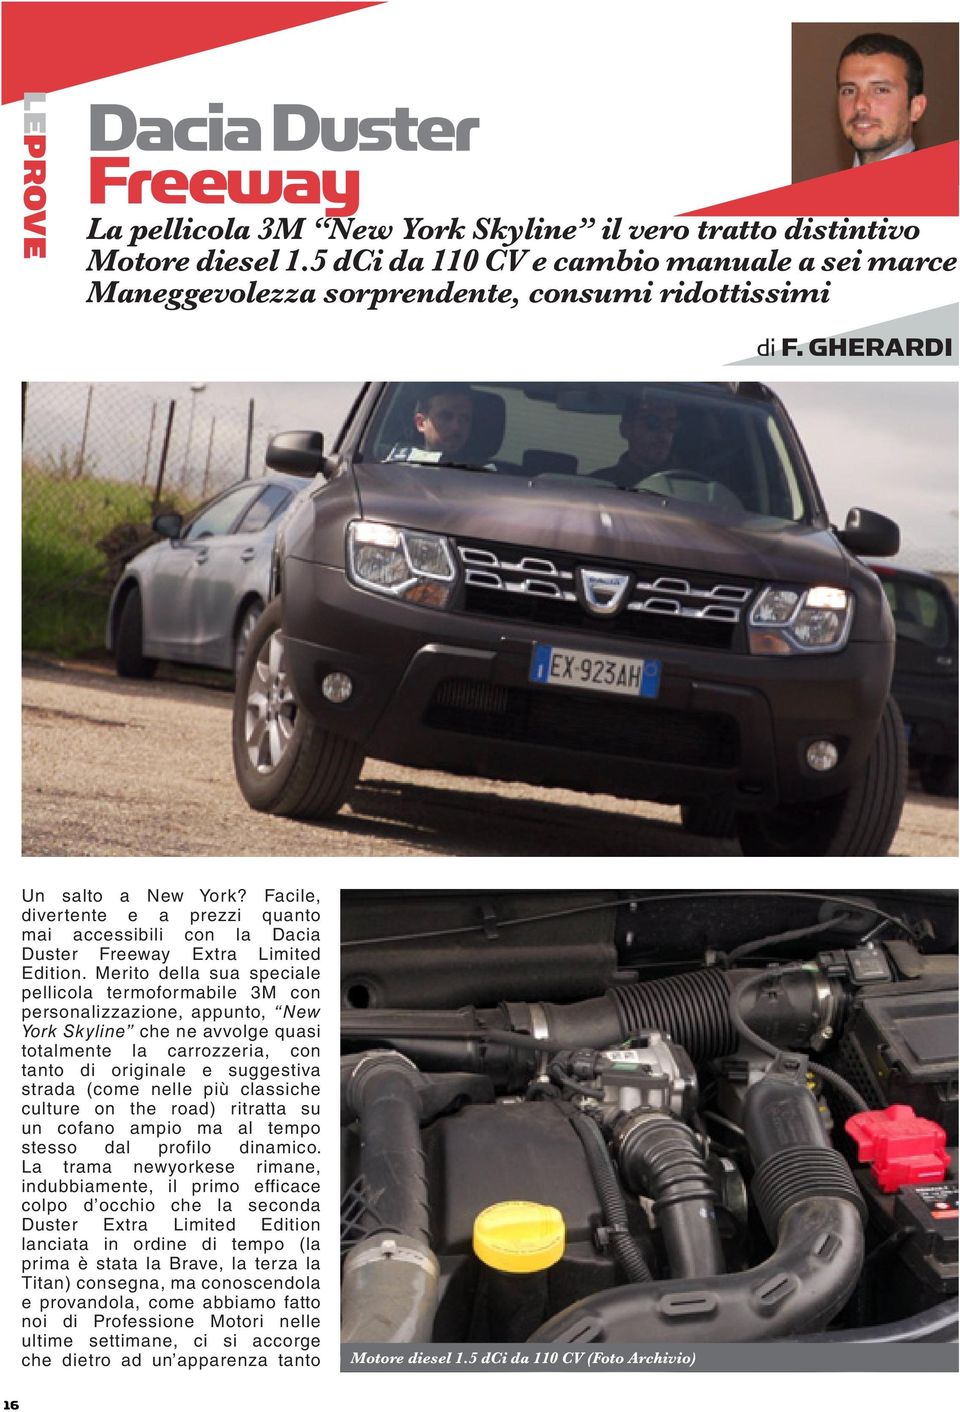 Facile, divertente e a prezzi quanto mai accessibili con la Dacia Duster Freeway Extra Limited Edition.